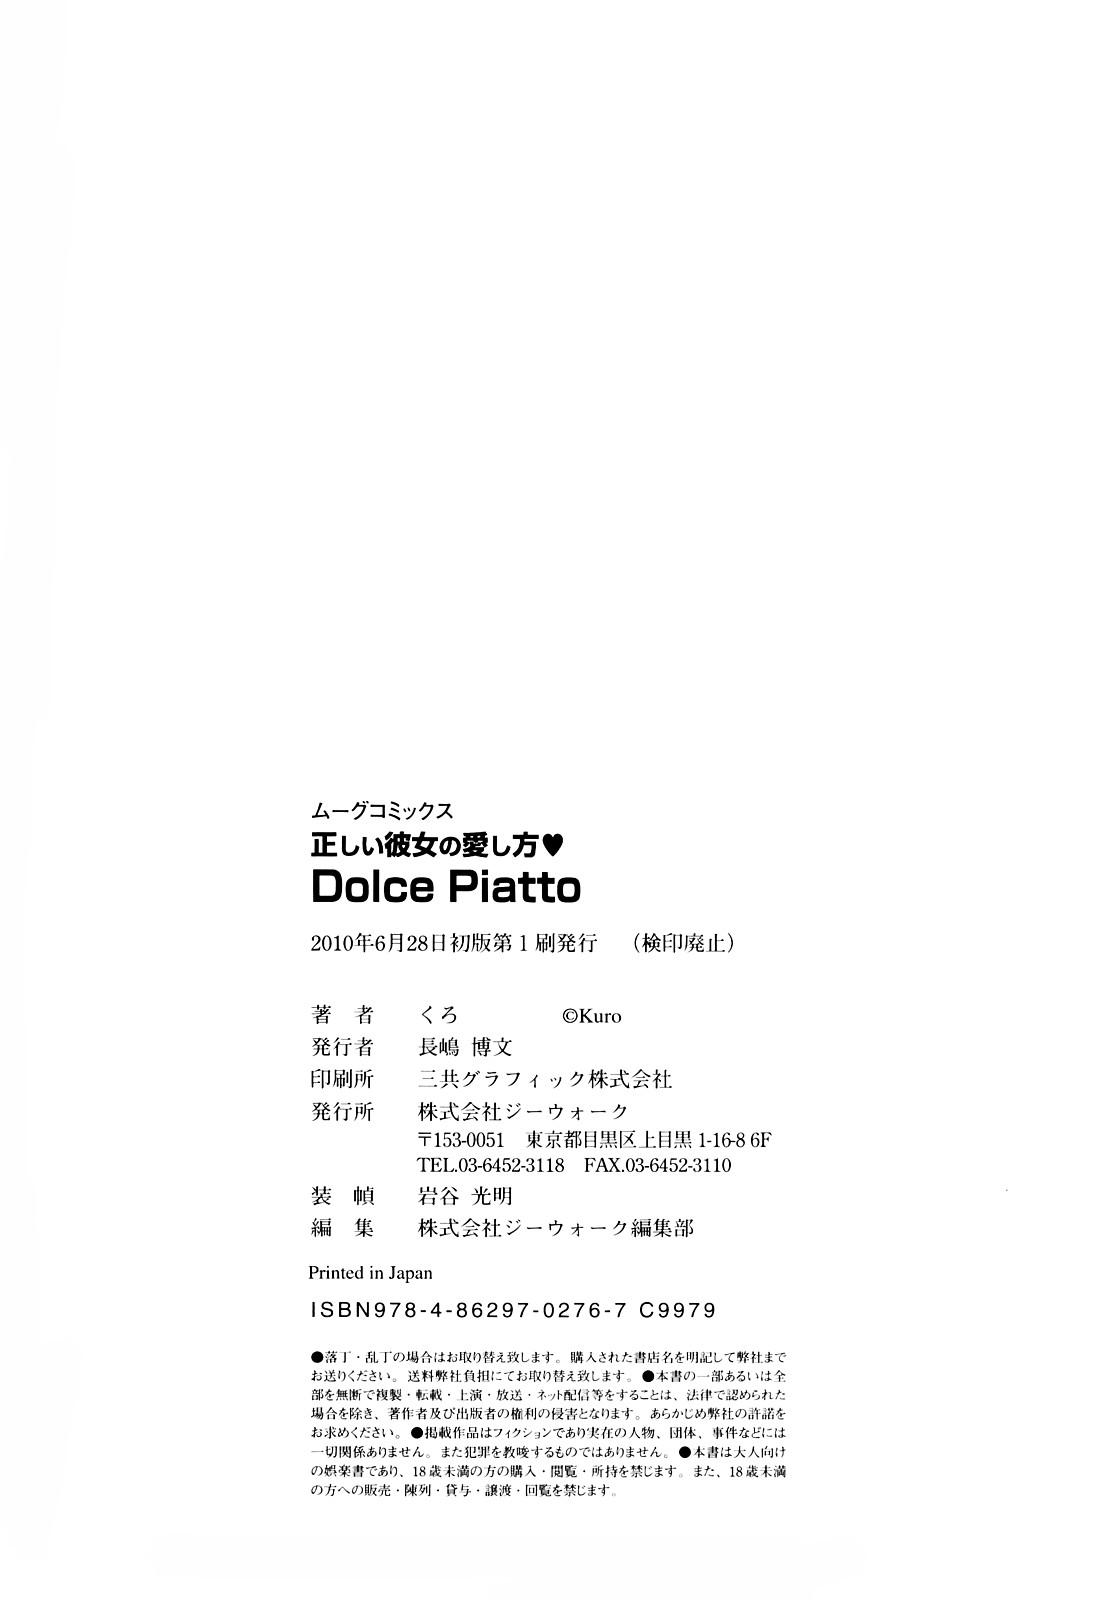 Tadashii Kanojo no Aishikata Dolcce Piatto 180